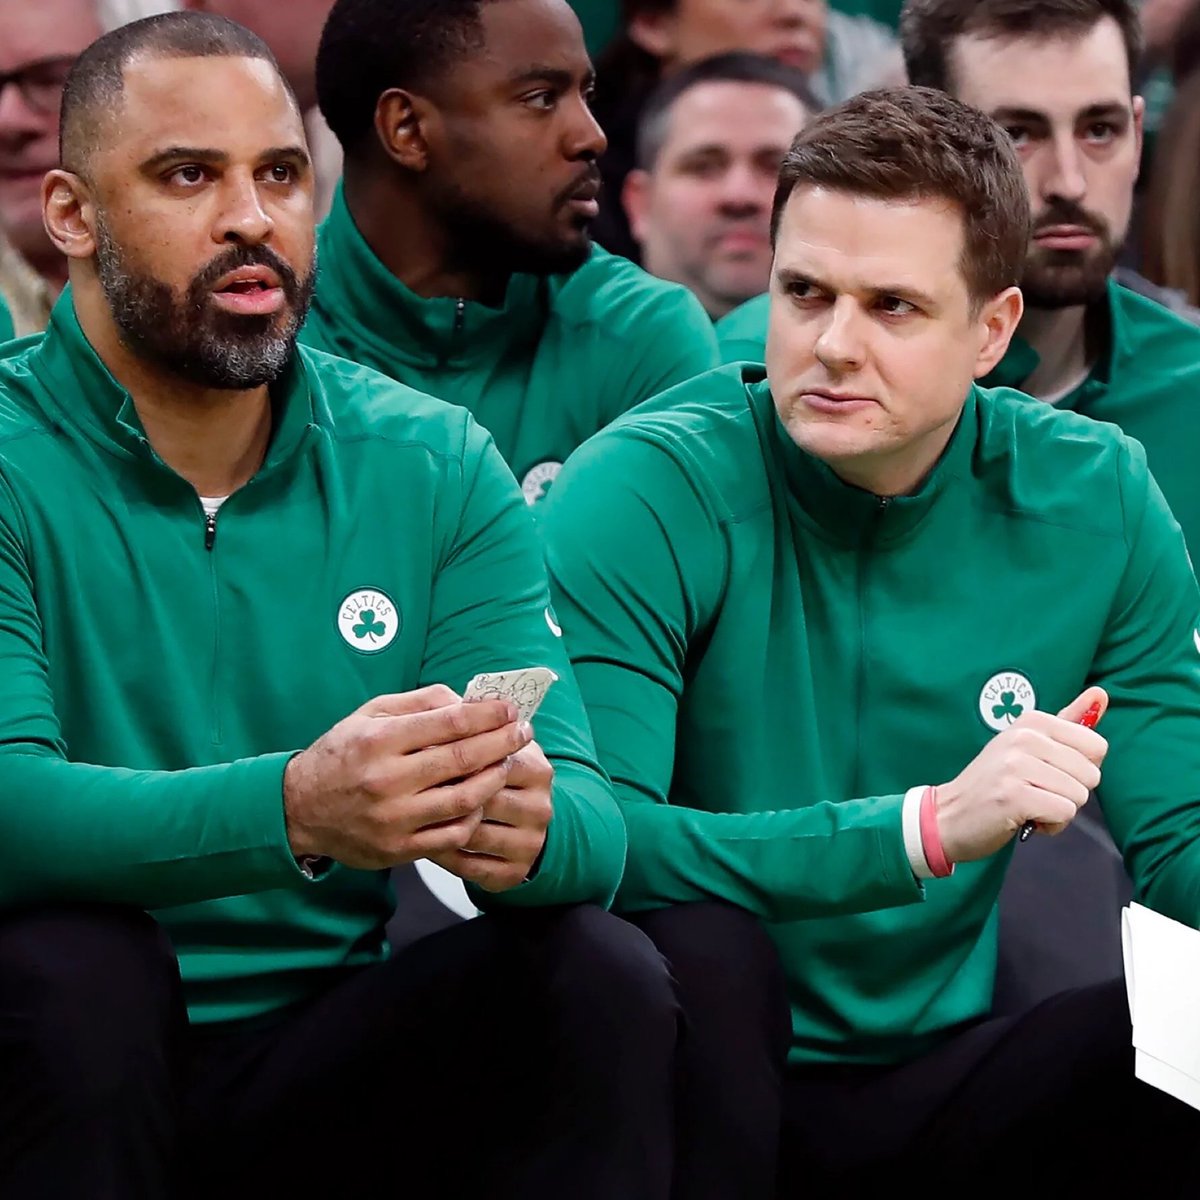 SON DAKİKA: Boston #Celtics yardımcı antrenörü Will Hardy, Utah #Jazz’in yeni koçu oldu! 🔥🔥